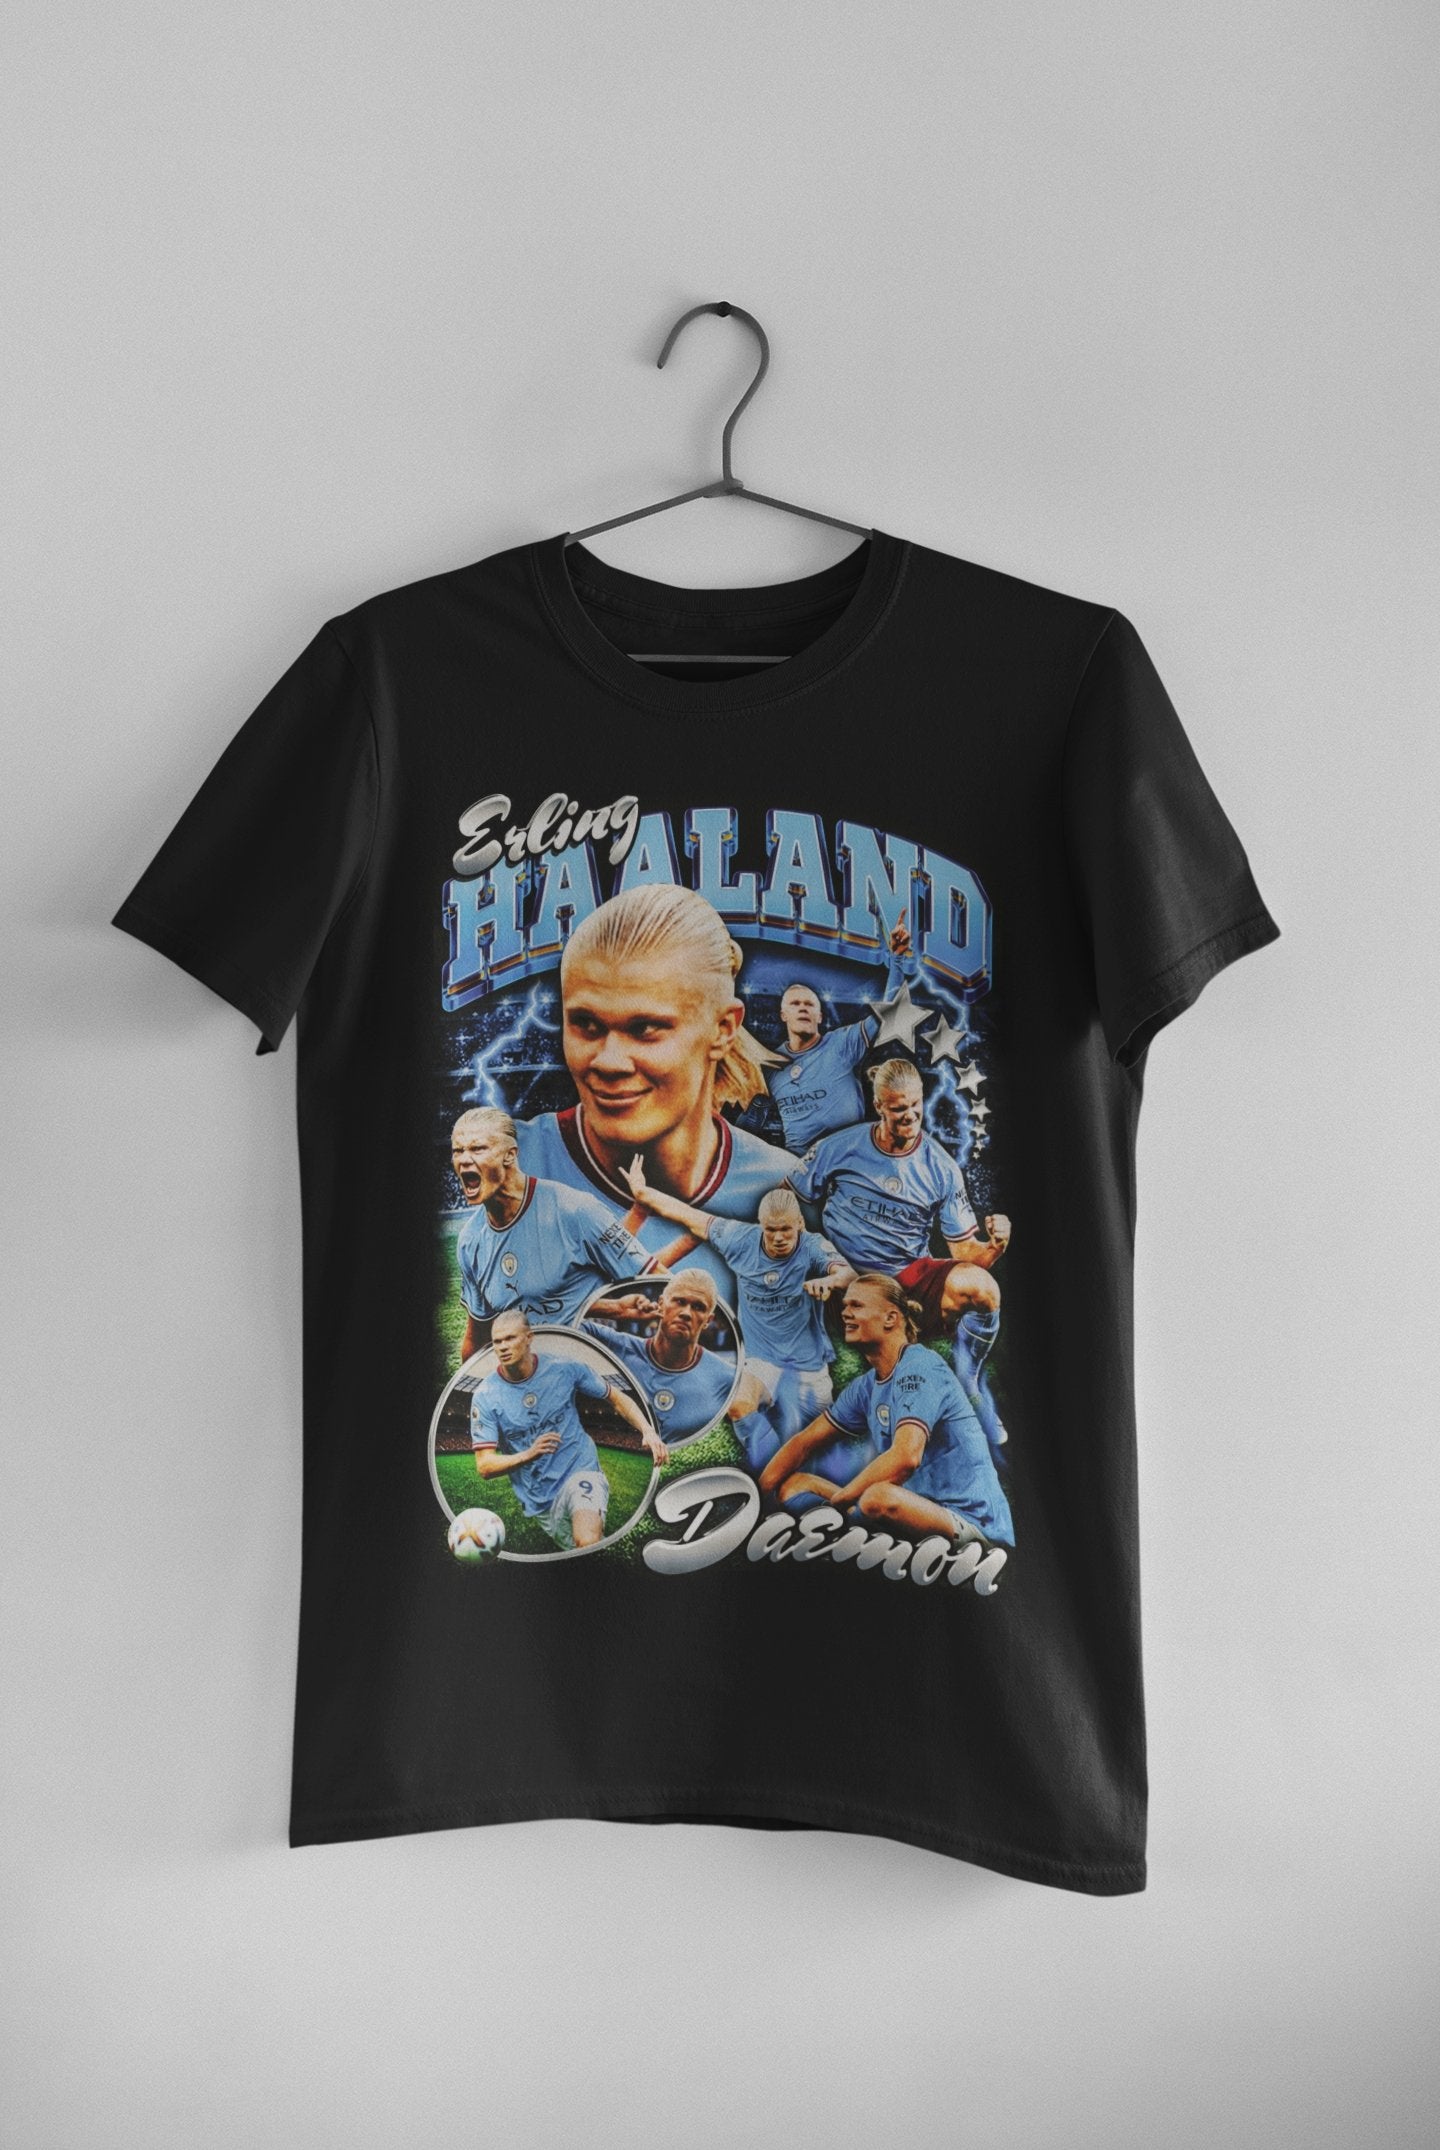 Erling Haaland v2 - Unisex t-shirt - Modern Vintage Apparel